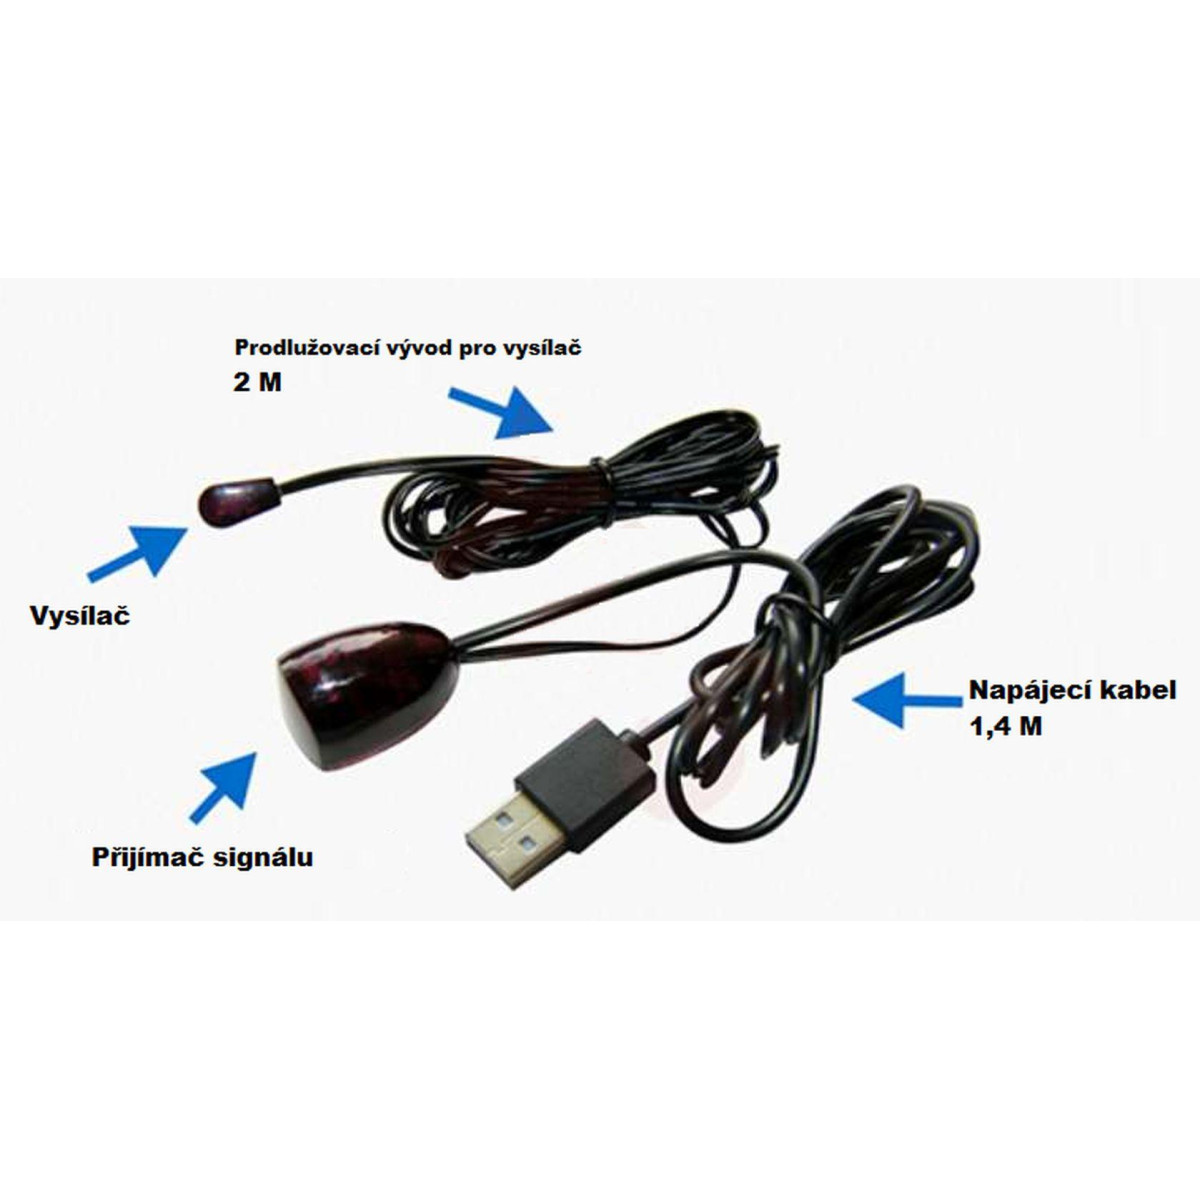 Univerzální opakovač, prodlužovač signálu dálkového ovladače DA4339A, USB, 2m kompatibilní